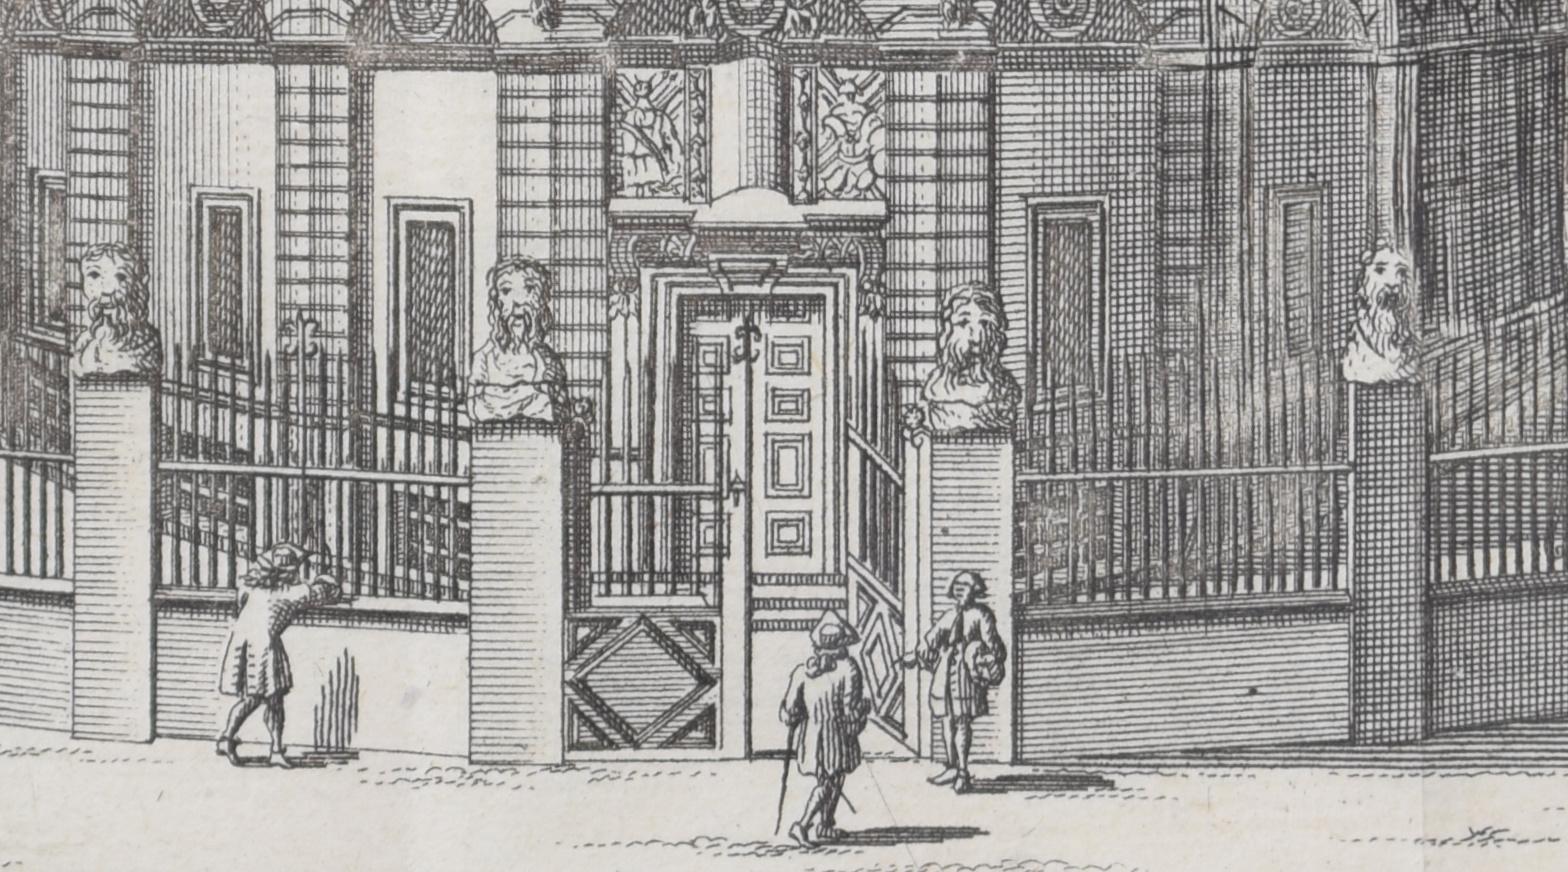 Pieter van der Aa (1659-1733), d'après David Loggan (1634-1692)
Le théâtre Sheldonian, Université d'Oxford
Gravure
12 x 16 cm

Une vue du XVIIIe siècle du merveilleux théâtre Sheldonian d'Oxford, gravée par Pieter van der Aa d'après David Loggan, le